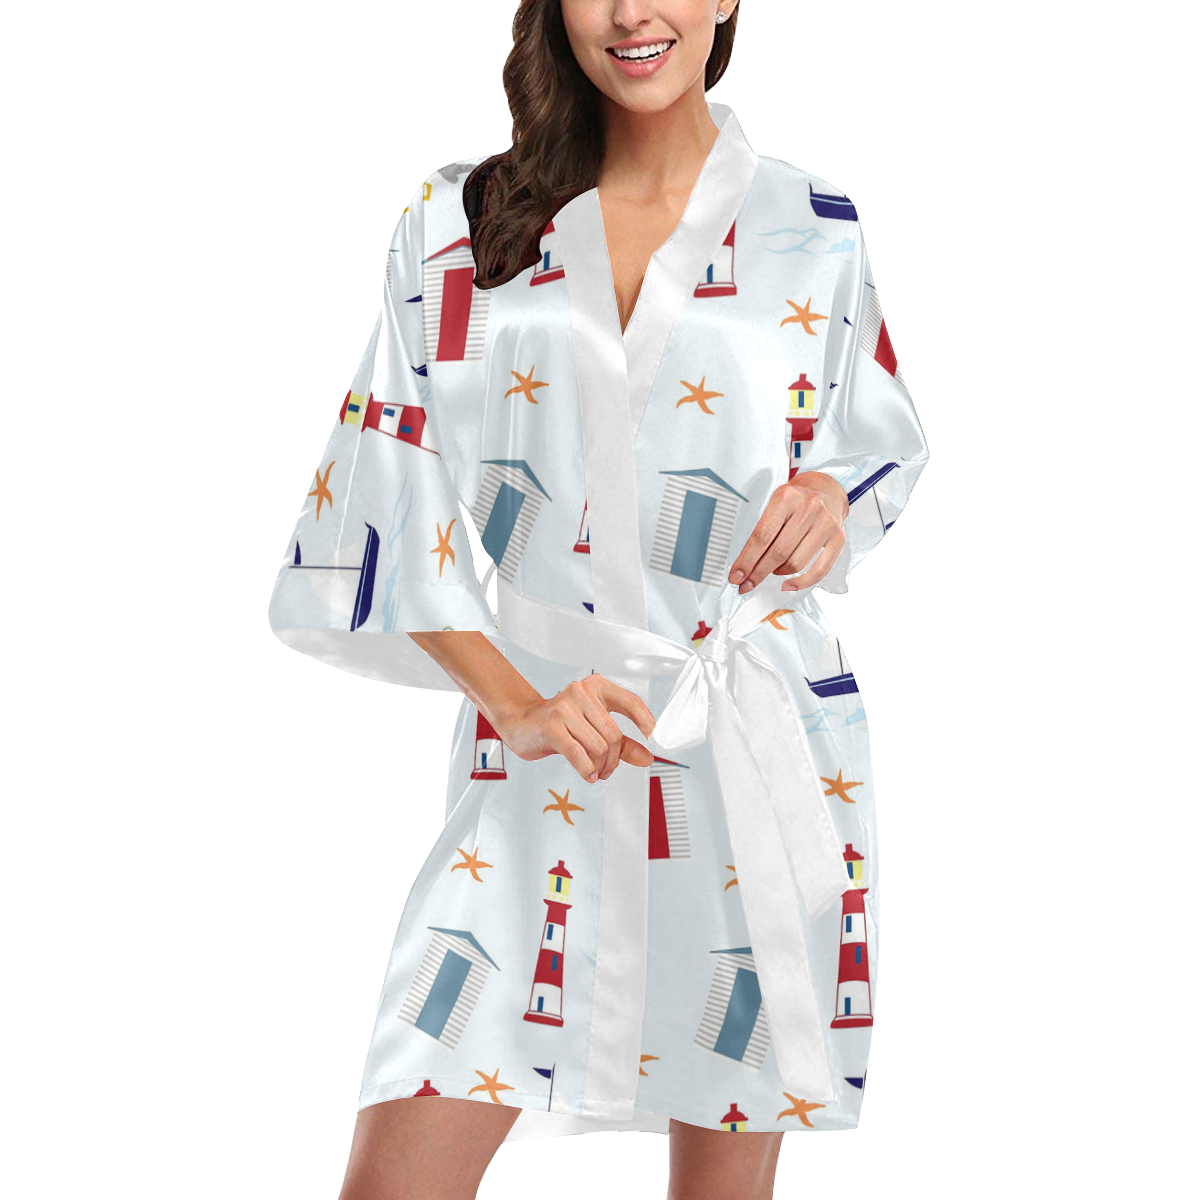 Nautical 1 Kimono Robe